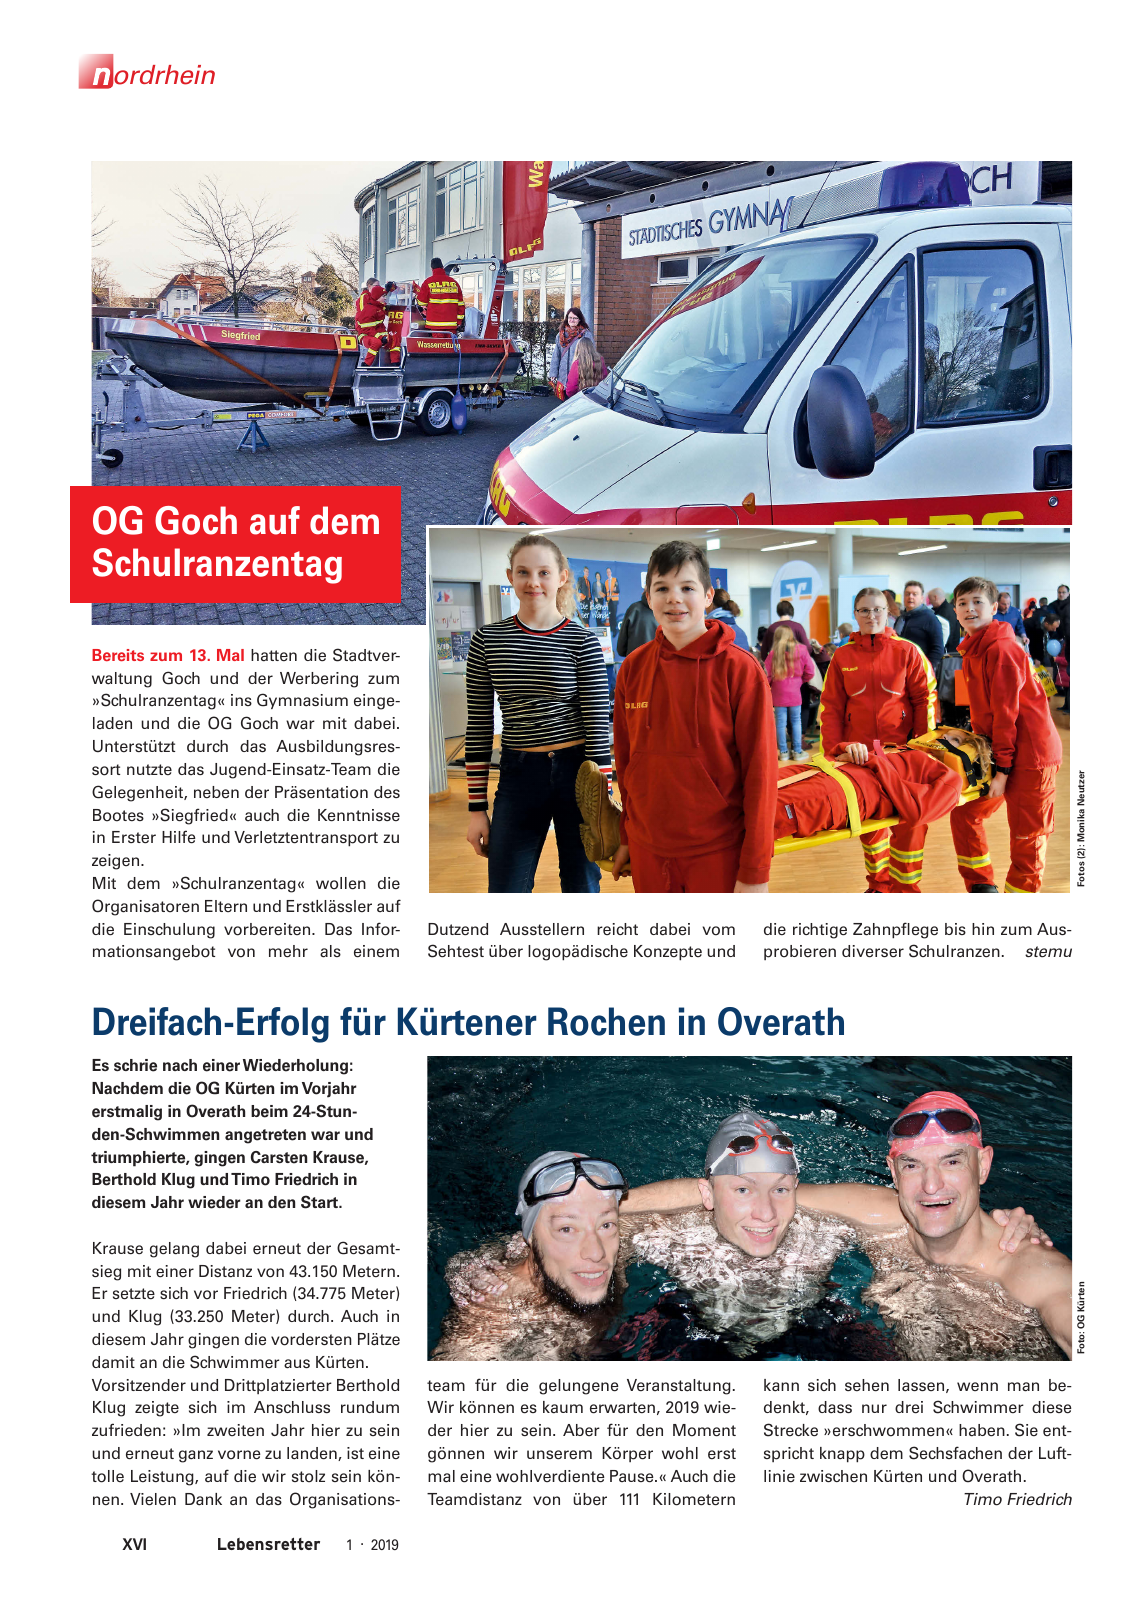 Vorschau Lebensretter 1/2019 –  Regionalausgabe Nordrhein Seite 18